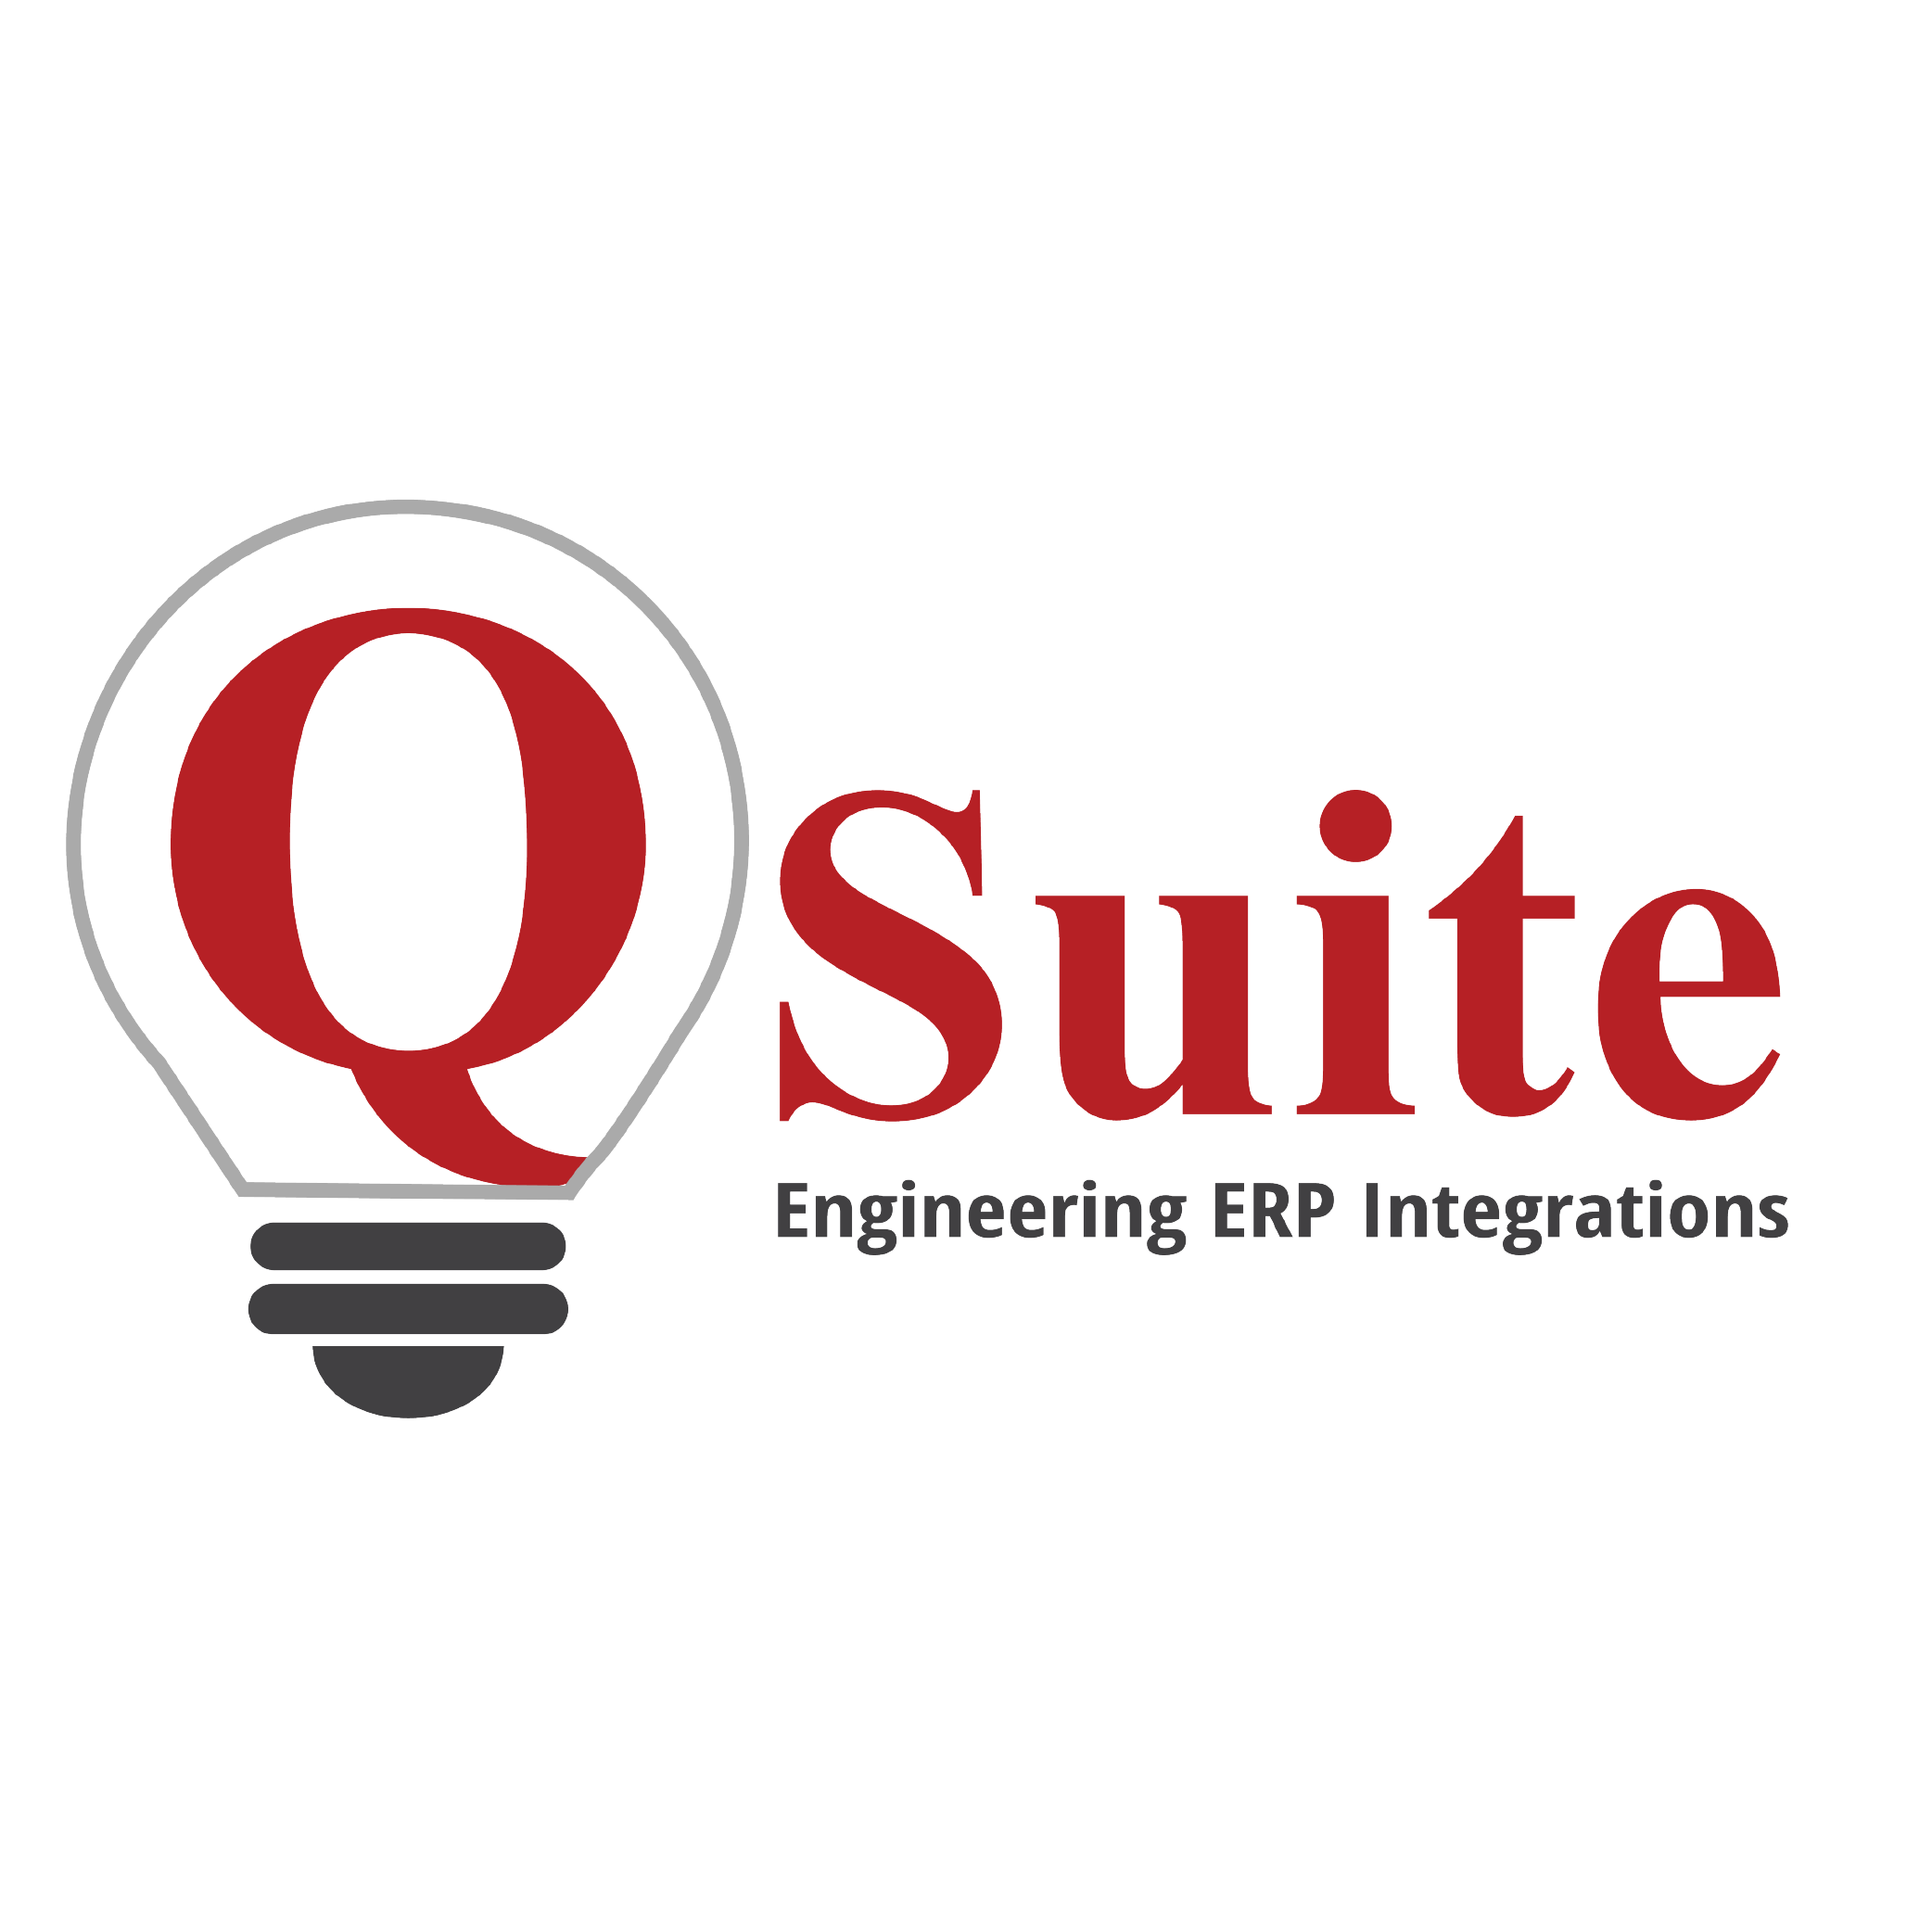 QSuite: Lassen Sie uns miteinander reden und die richtige Lösung für Ihr Unternehmen finden!